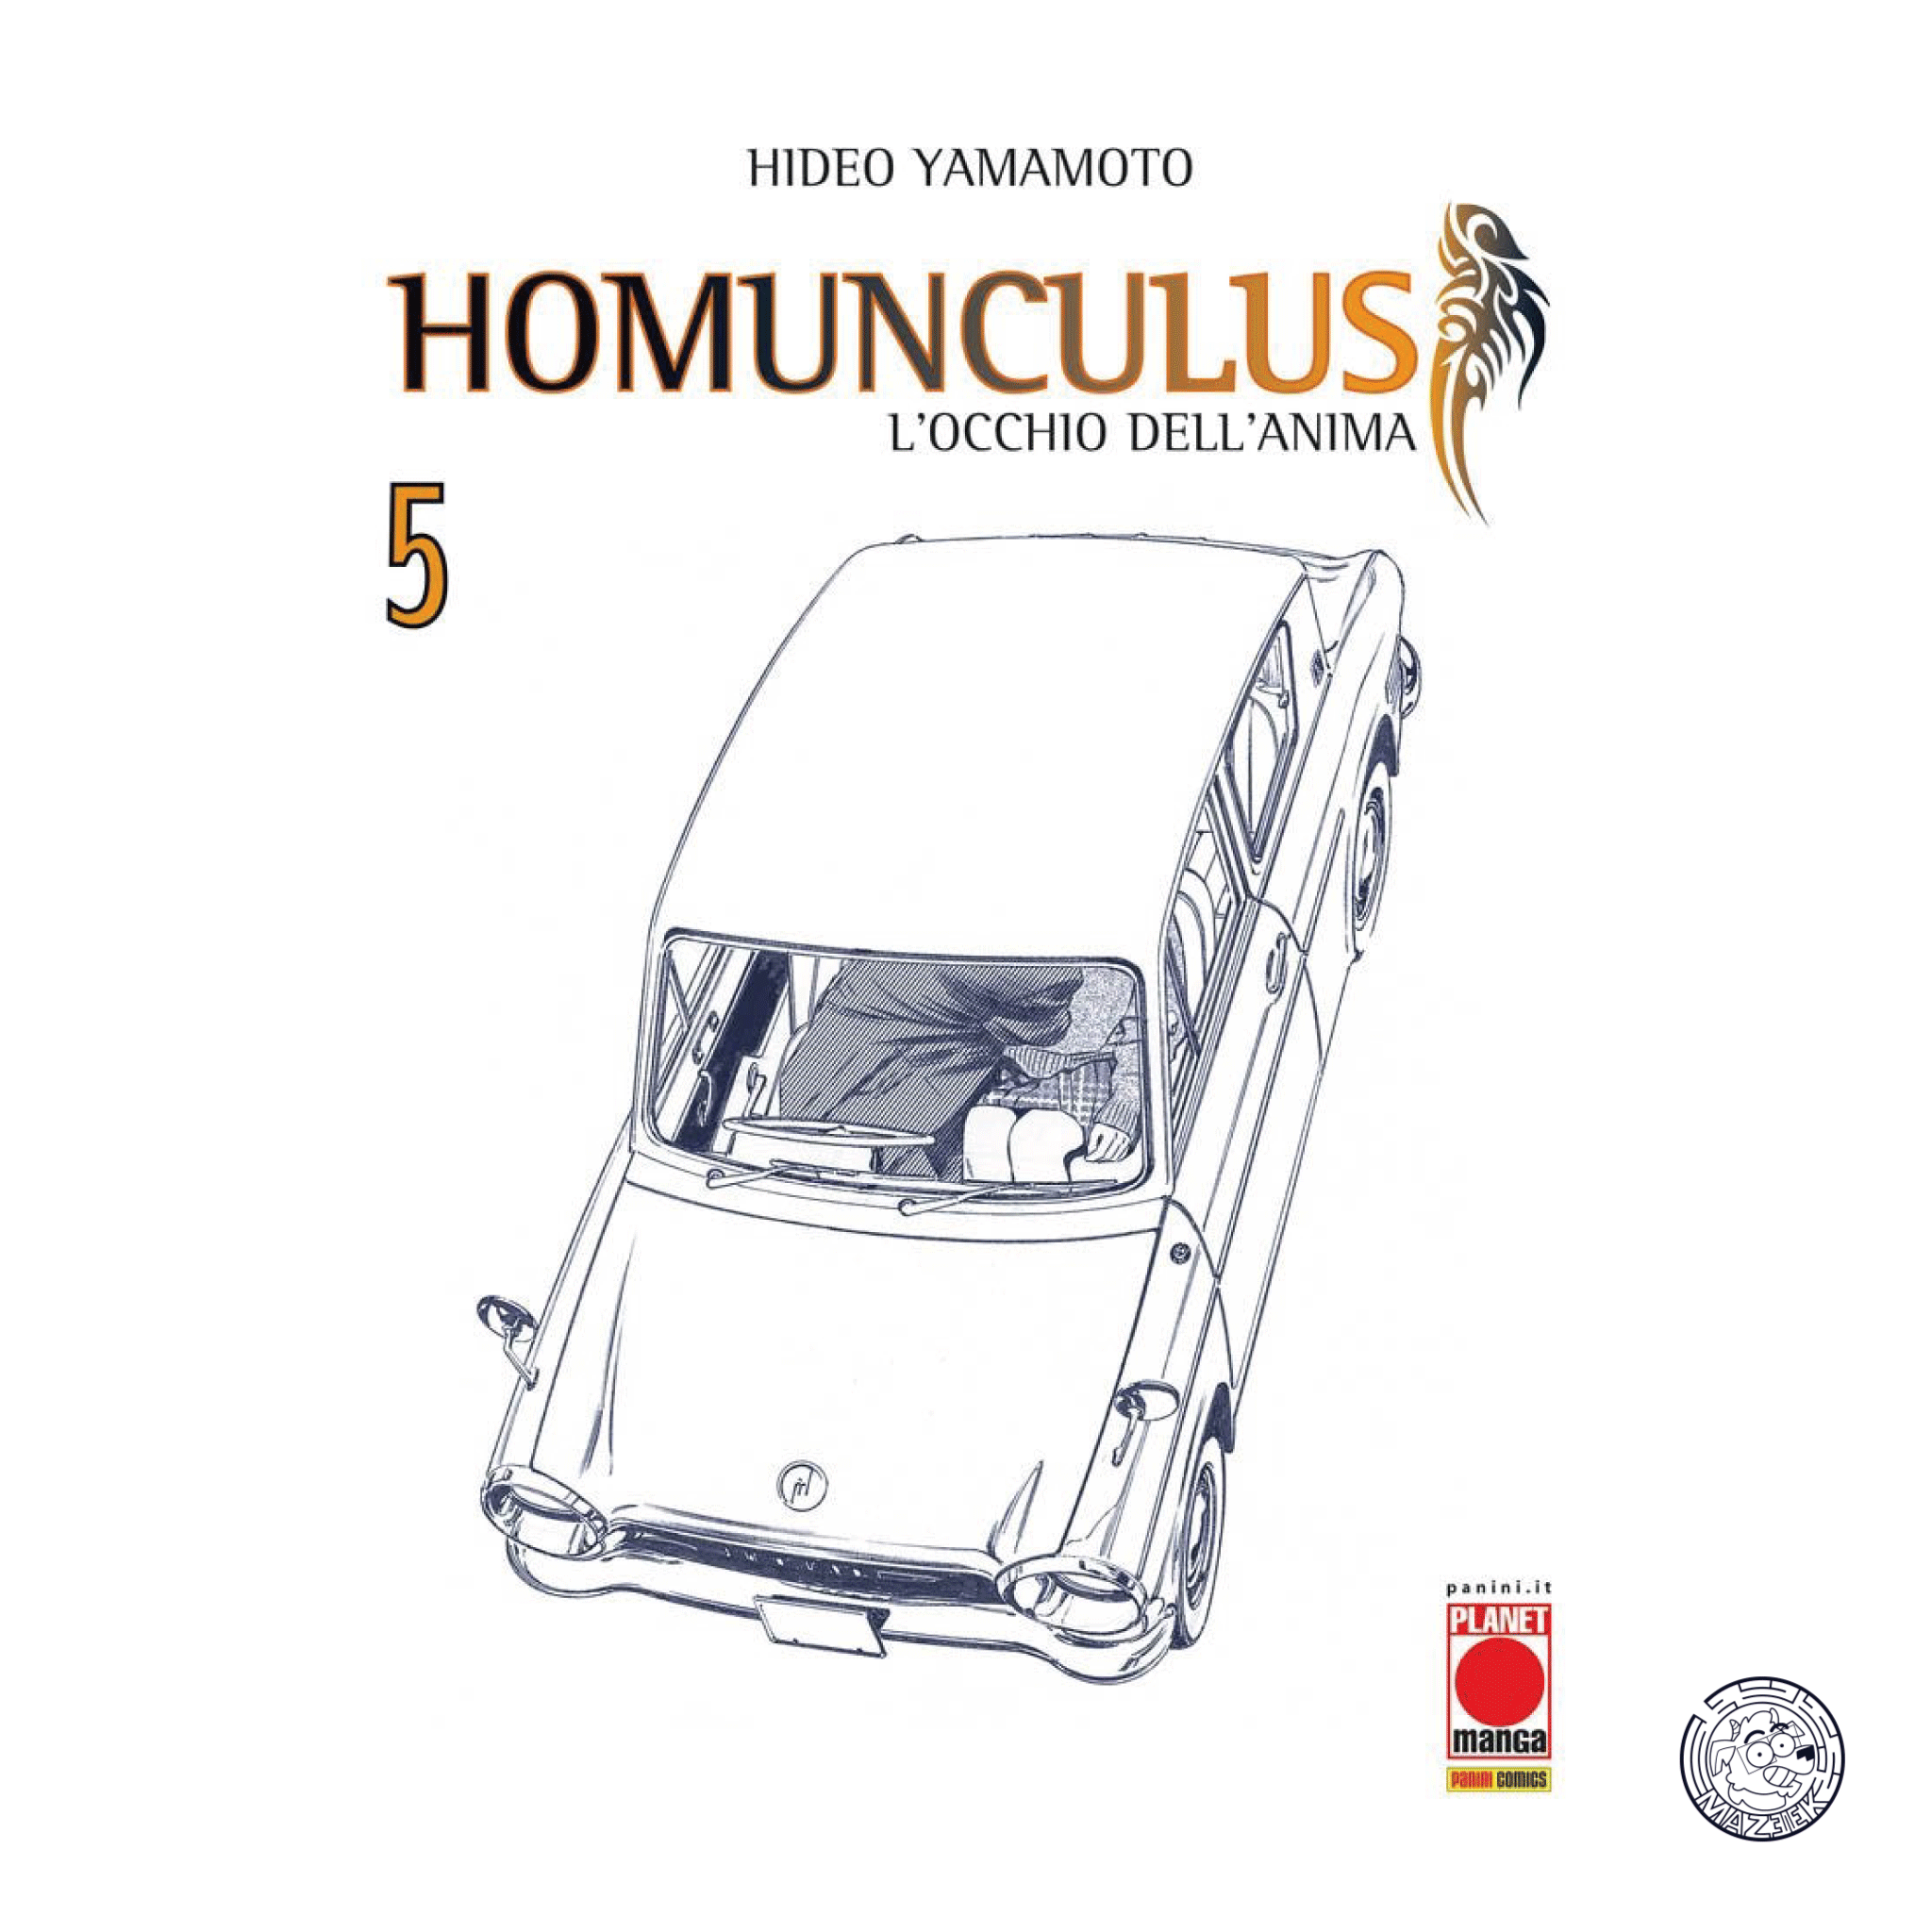 Homunculus (Panini) 05 - Reprint 3